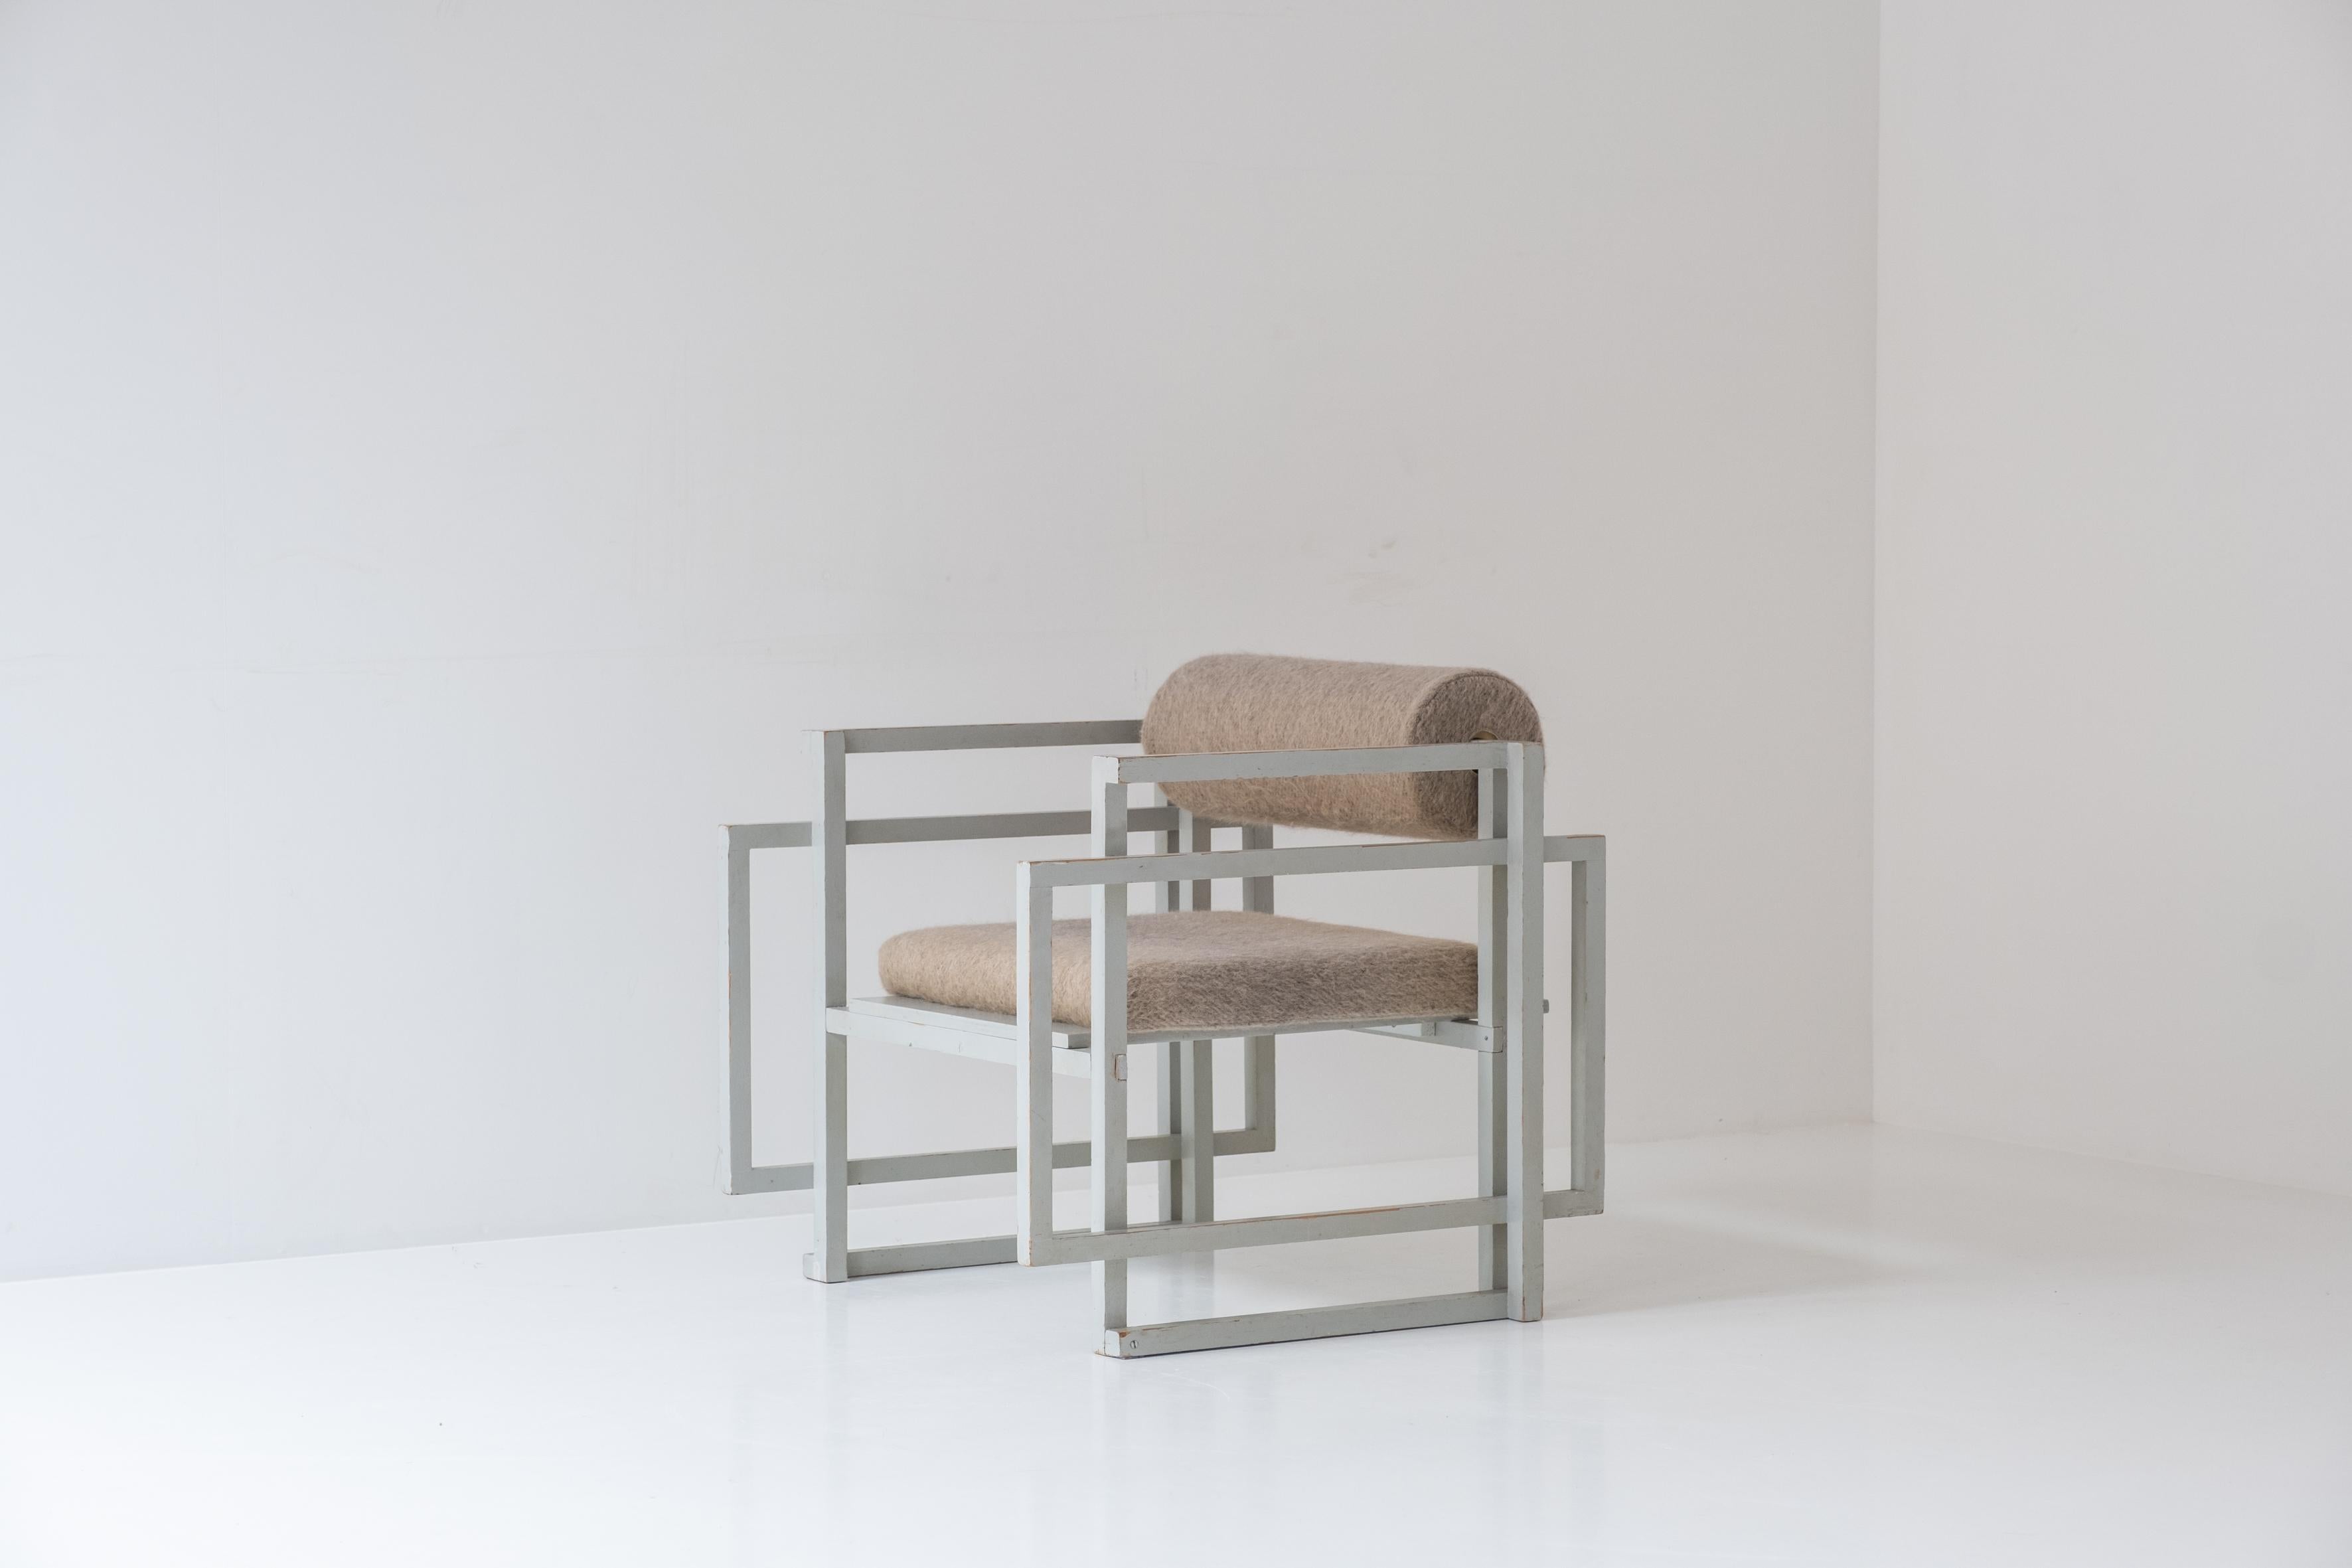 Superbe fauteuil conçu et fabriqué datant des années 1960. Cette chaise sculpturale est composée d'un cadre en chêne peint et d'une assise et d'un dossier en laine fraîchement retapissés. Réalisé par un maître ébéniste inconnu, clairement inspiré